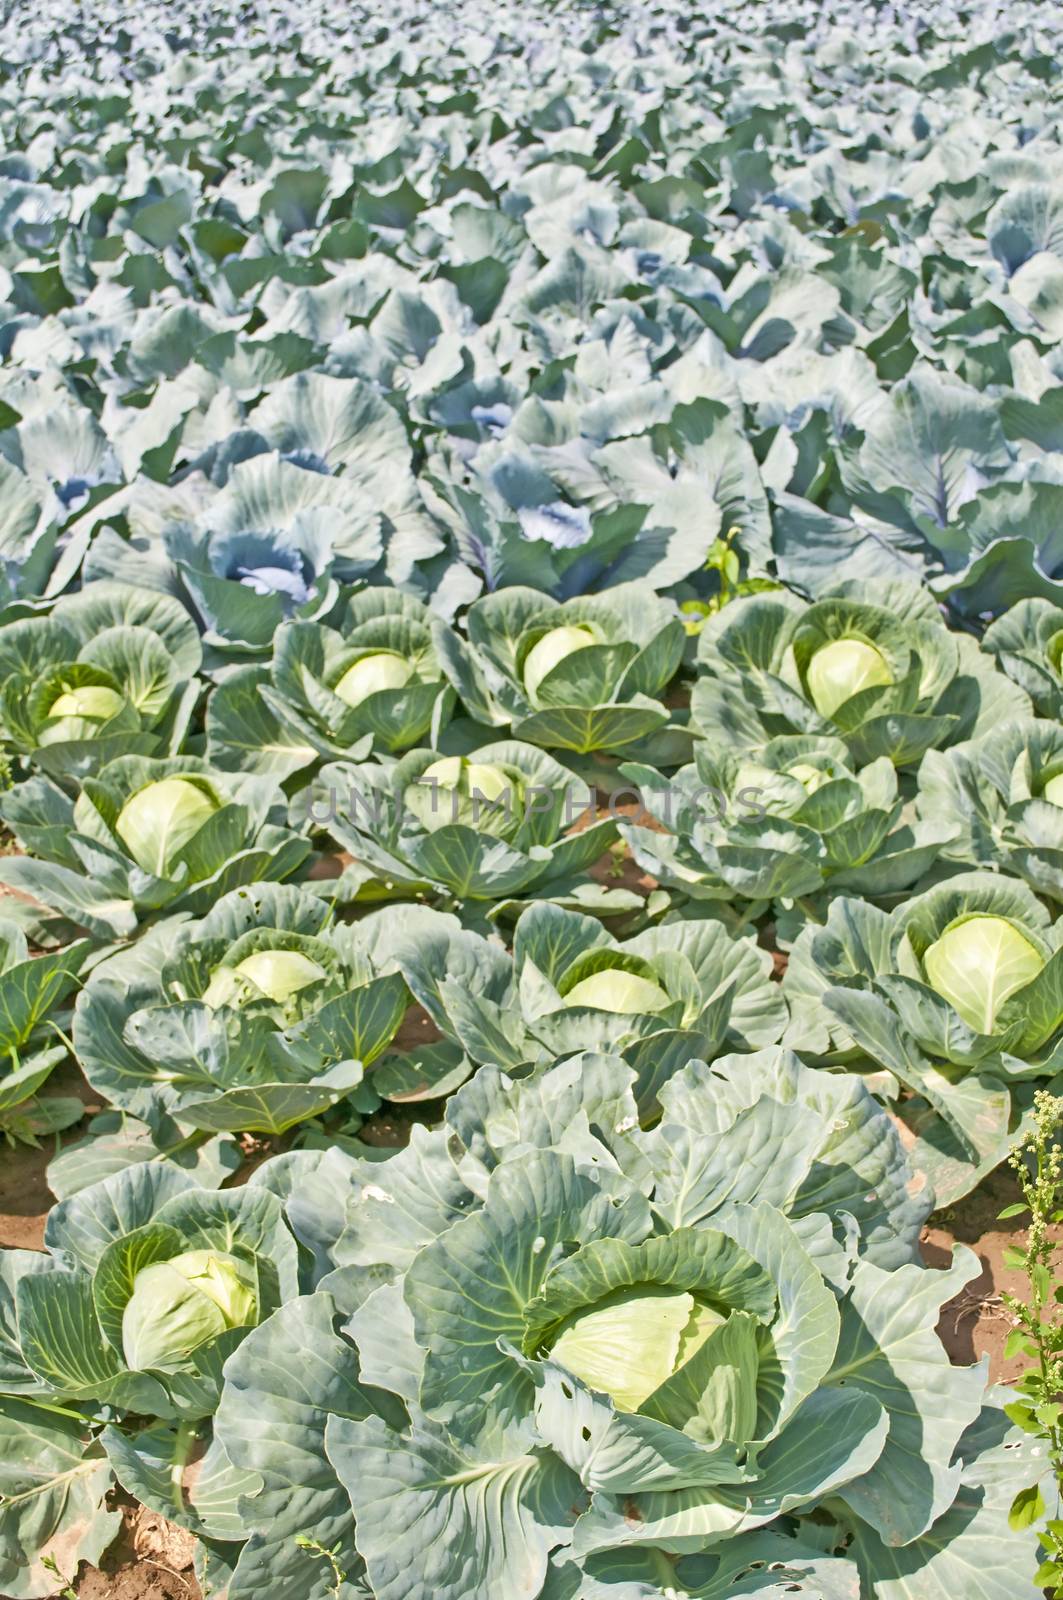 cultivation of kale by Jochen